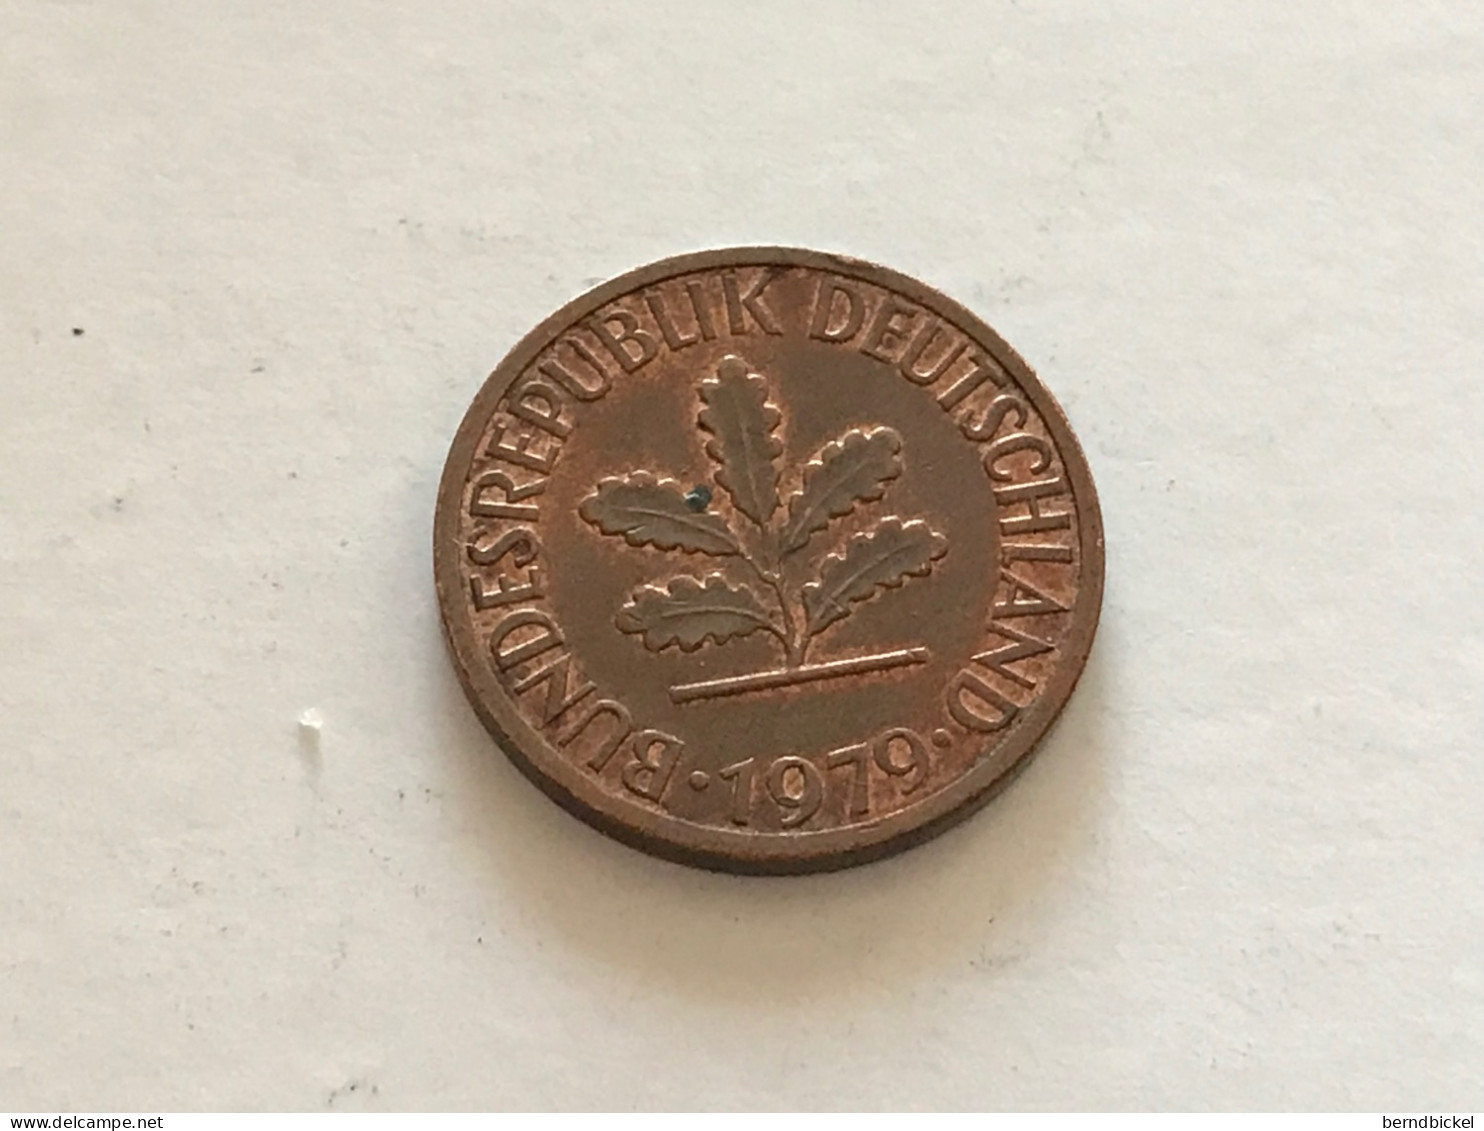 Münze Münzen Umlaufmünze Deutschland 1 Pennig 1979 Münzzeichen G - 1 Pfennig